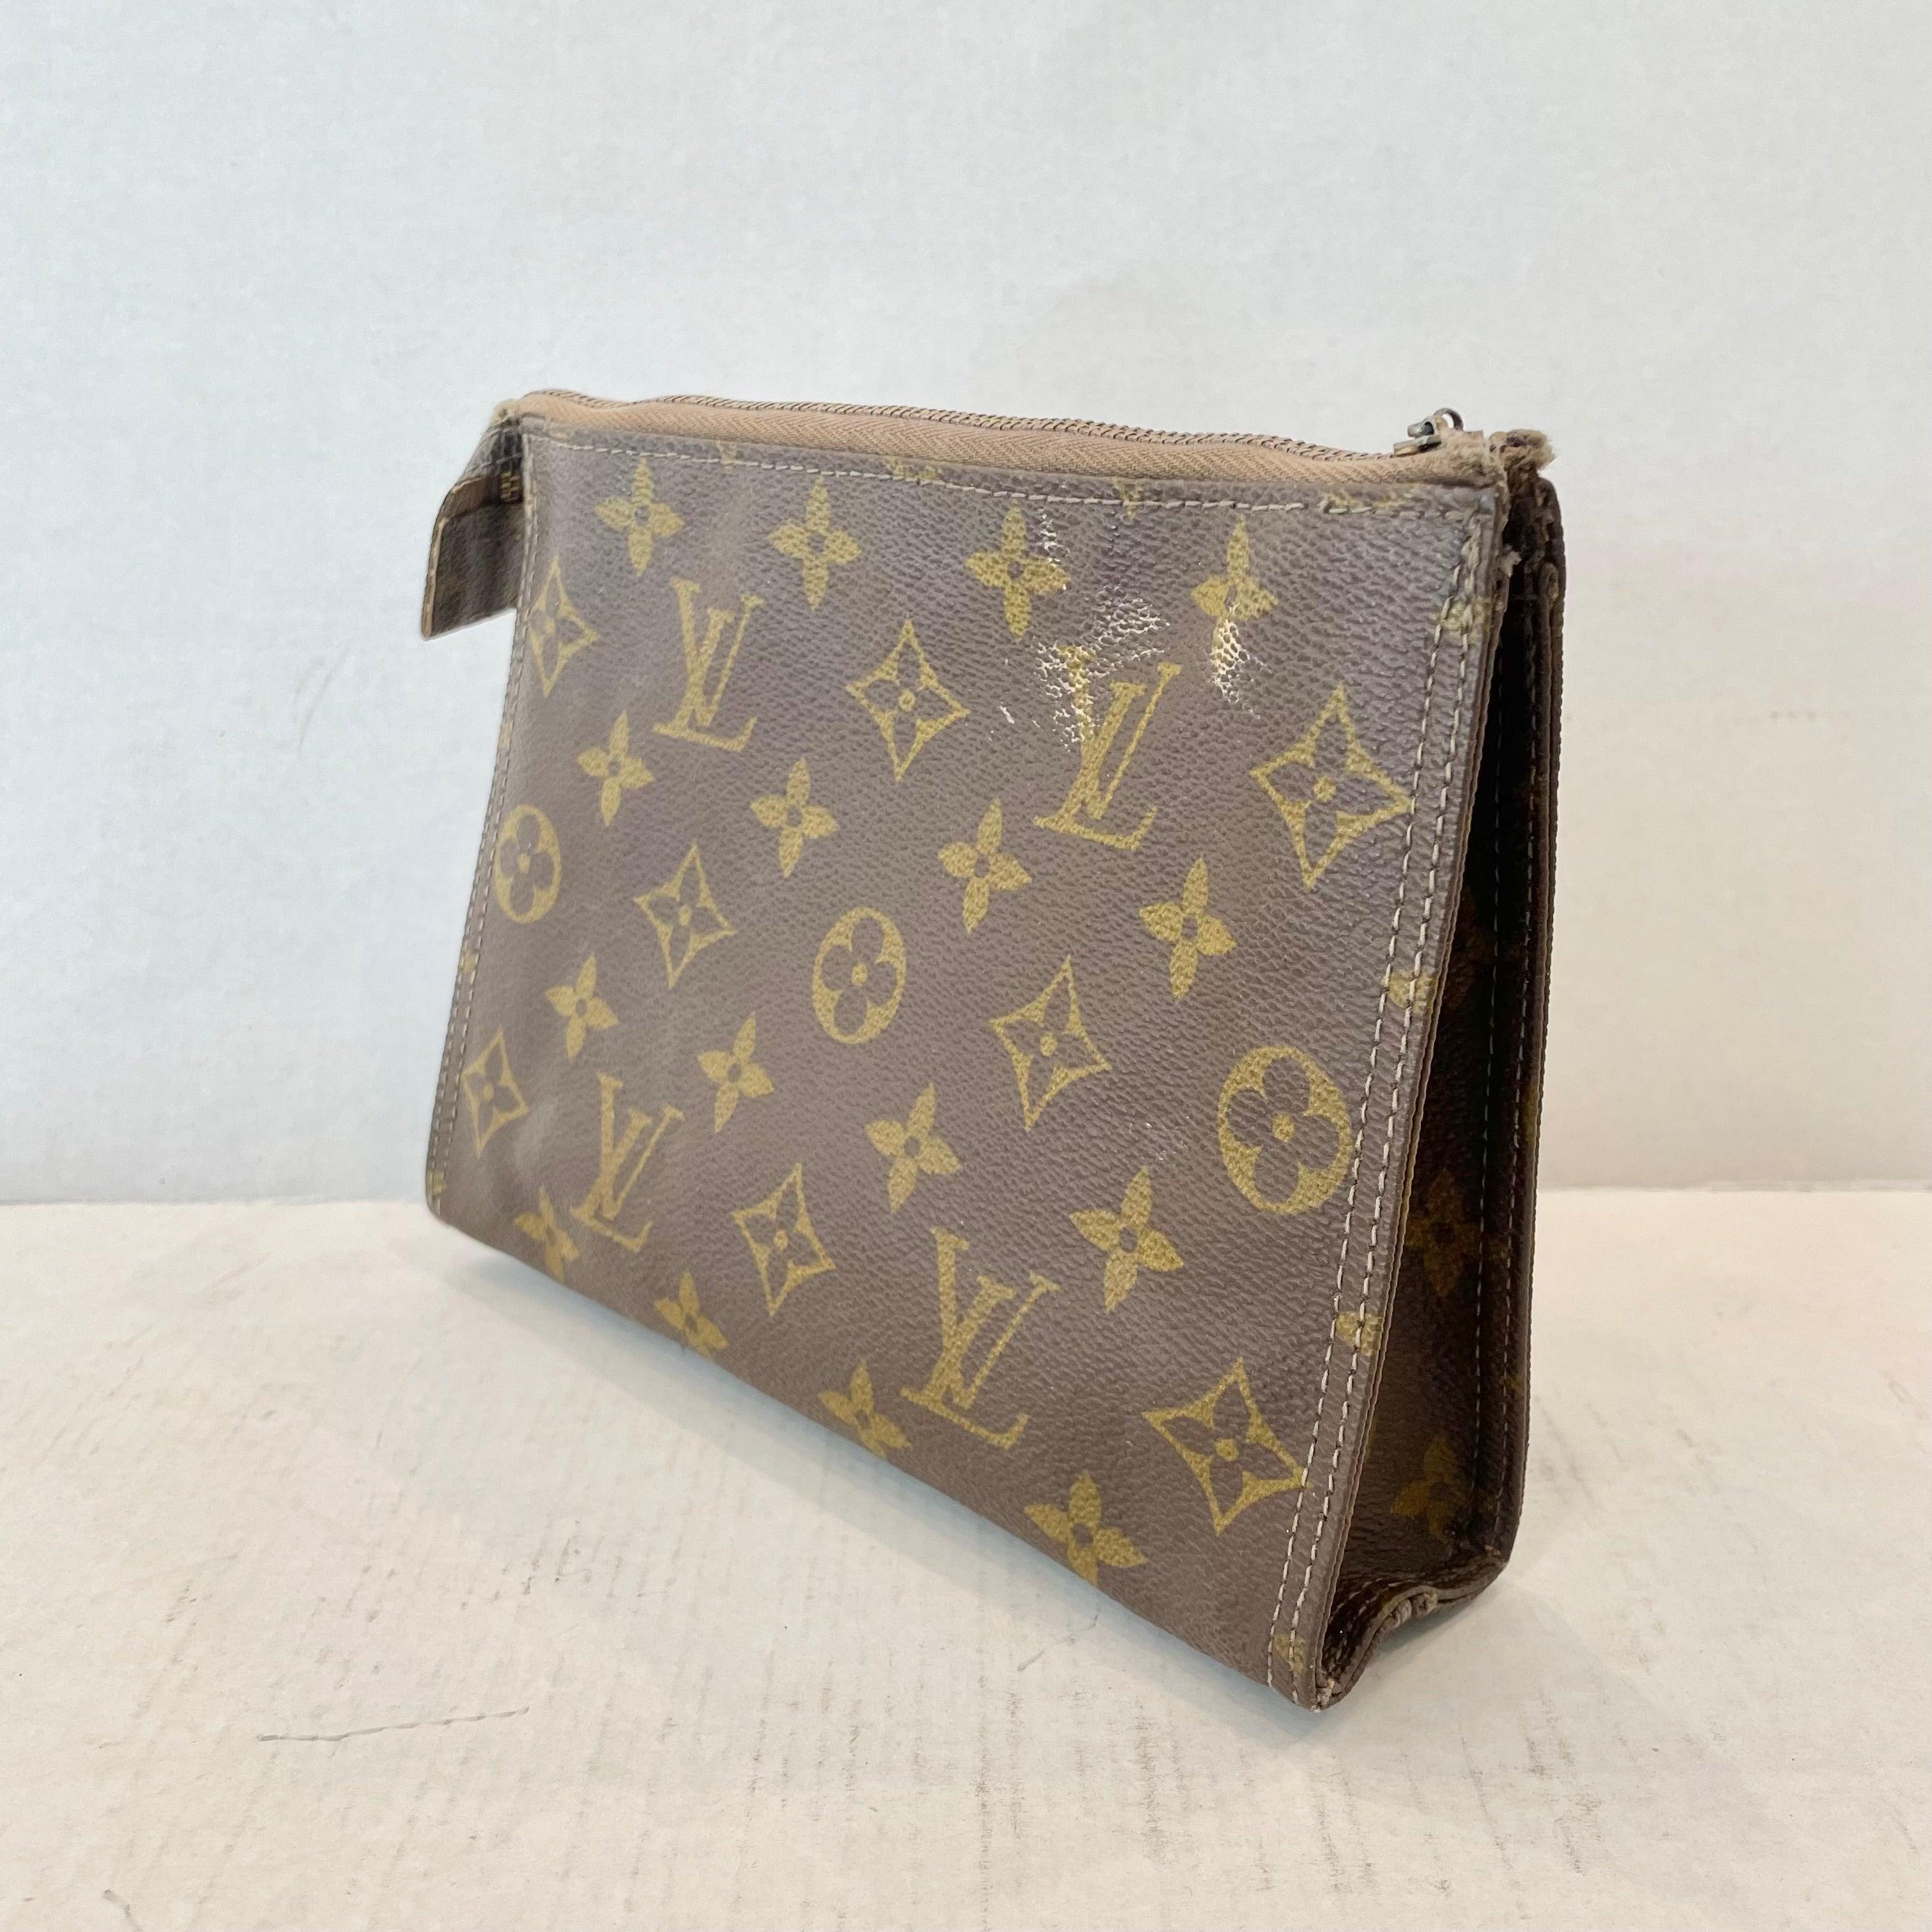 Rare Louis Vuitton Travel Bag, 1950s USA